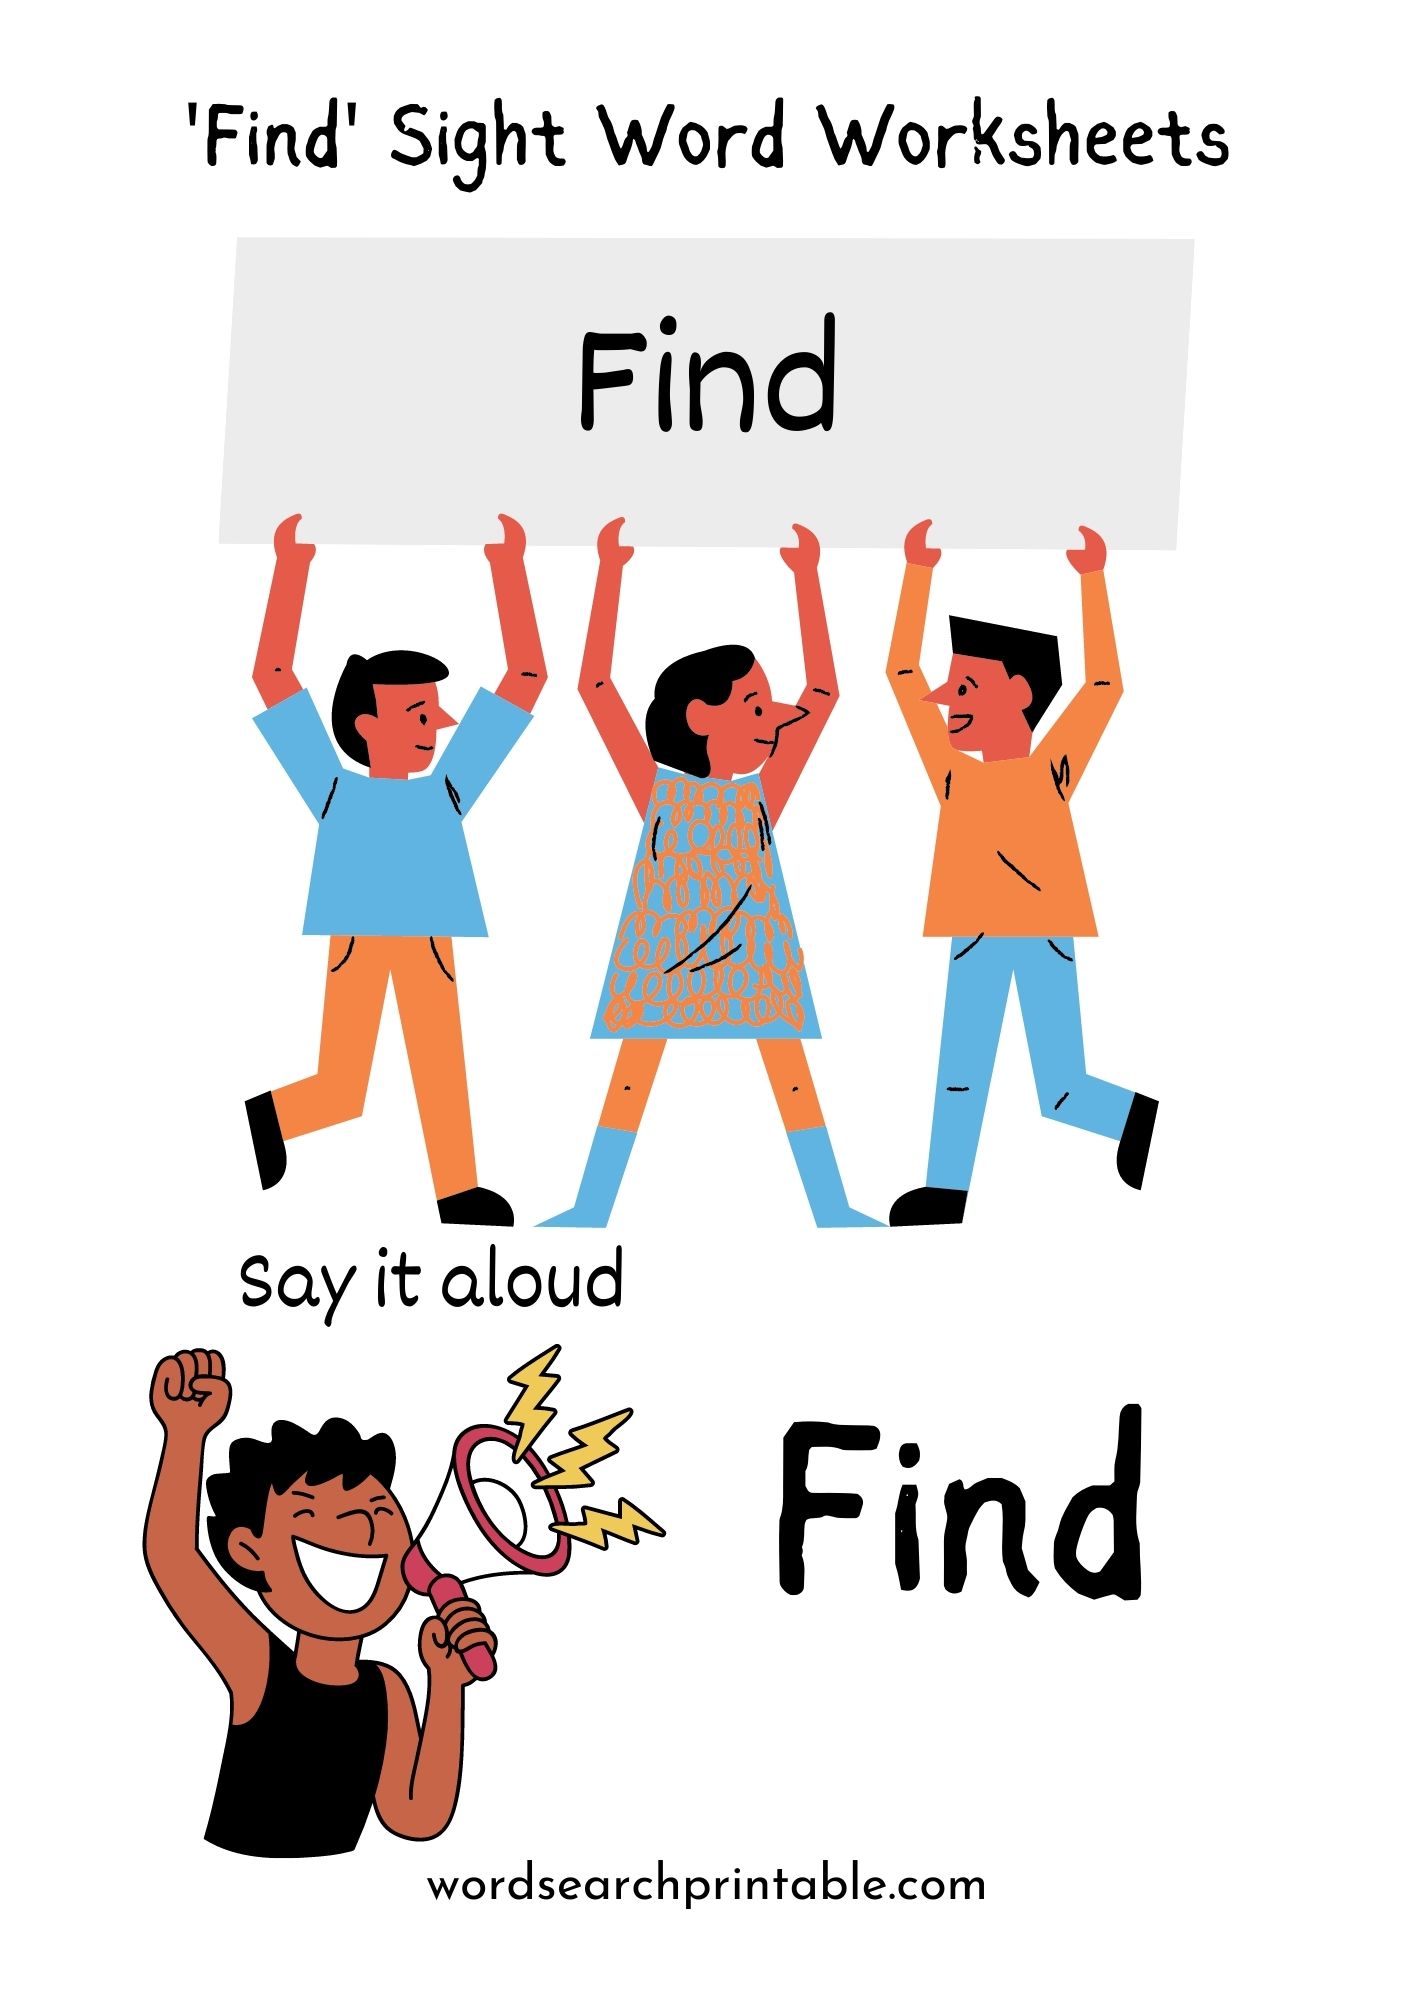 Find Sight Word Worksheet PDF Free - Sight Word Find Worksheet PDF Download